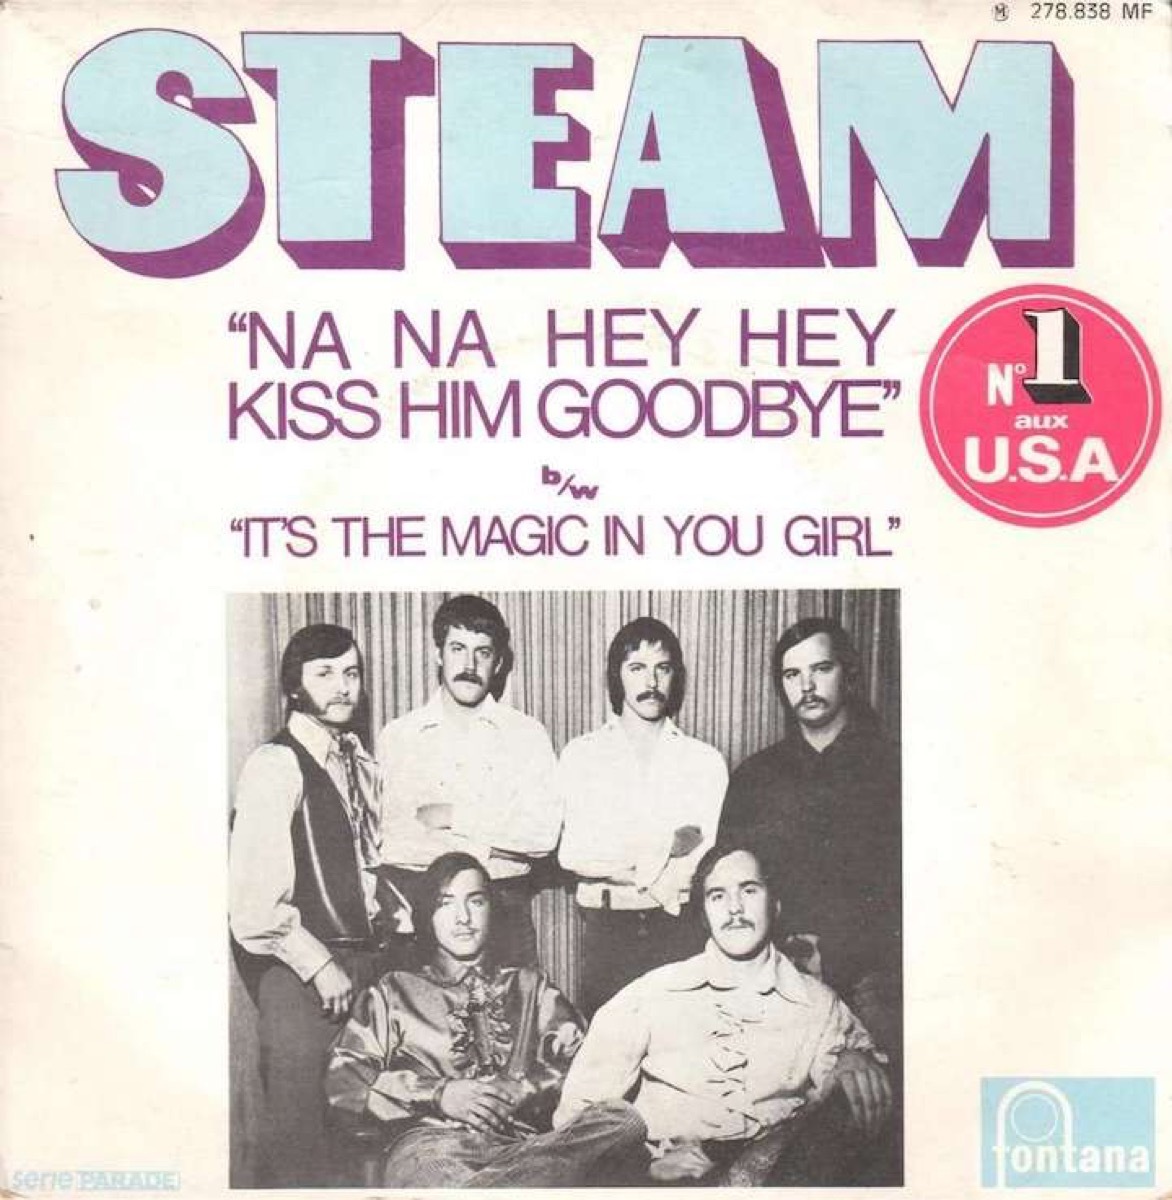 na na hey hey kiss him goodbye, steam record